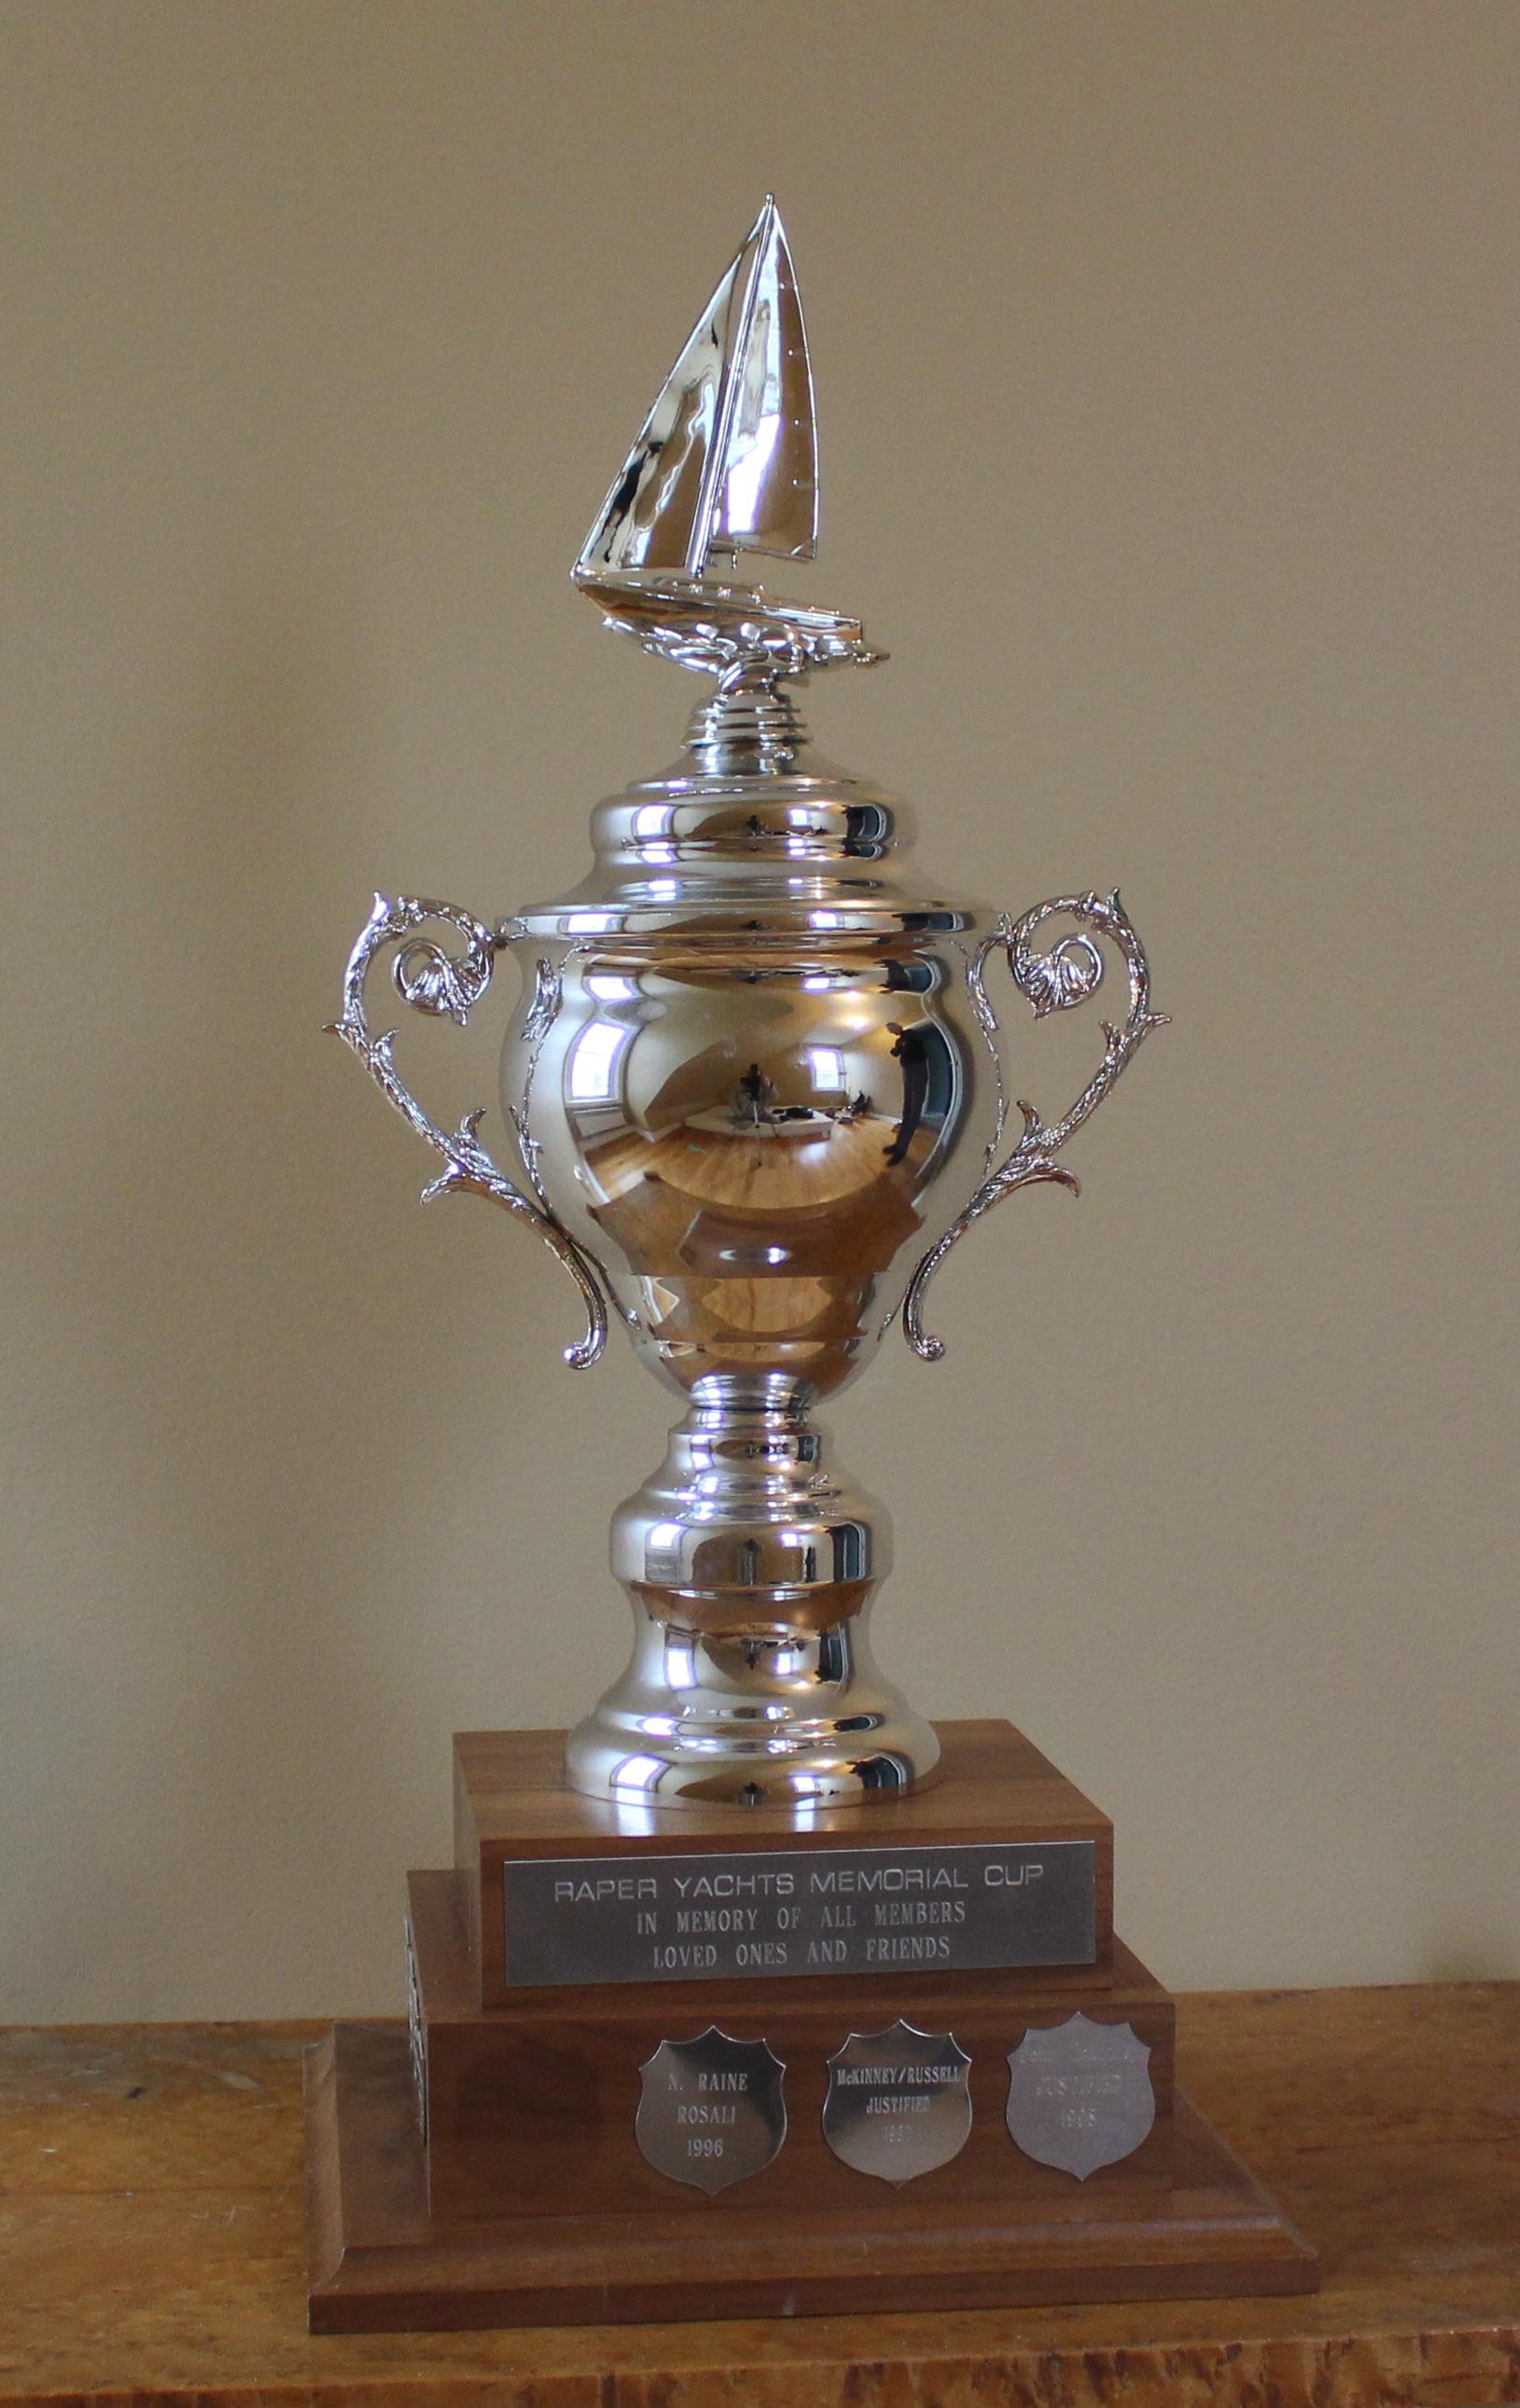 FYC-Raper Memorial Cup